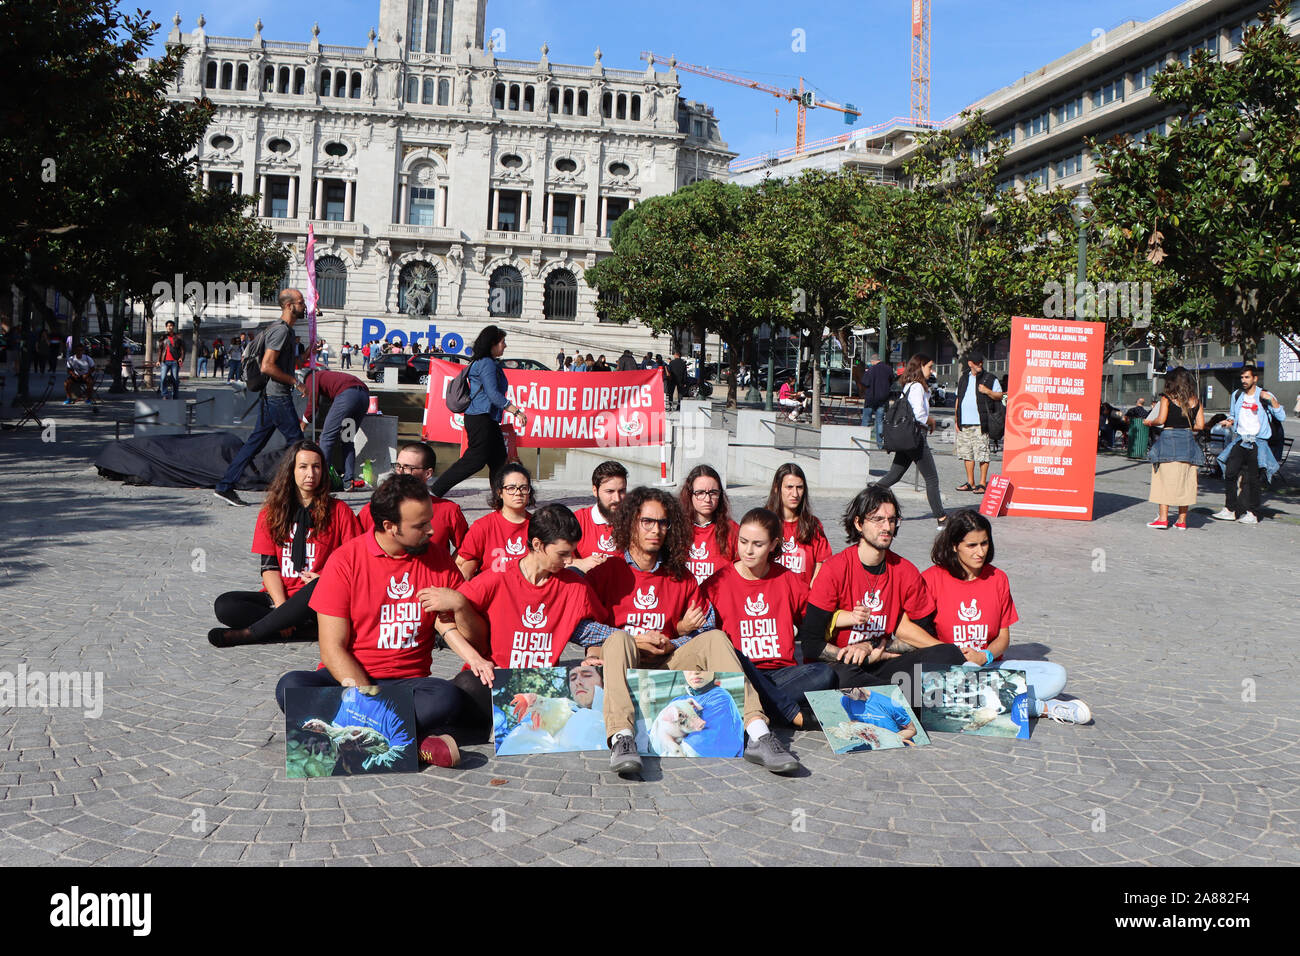 Porto, Portogallo - 05 Ottobre 2019: un gruppo di giovani attivisti protestano per i diritti degli animali. Lotta per gli animali. Foto Stock